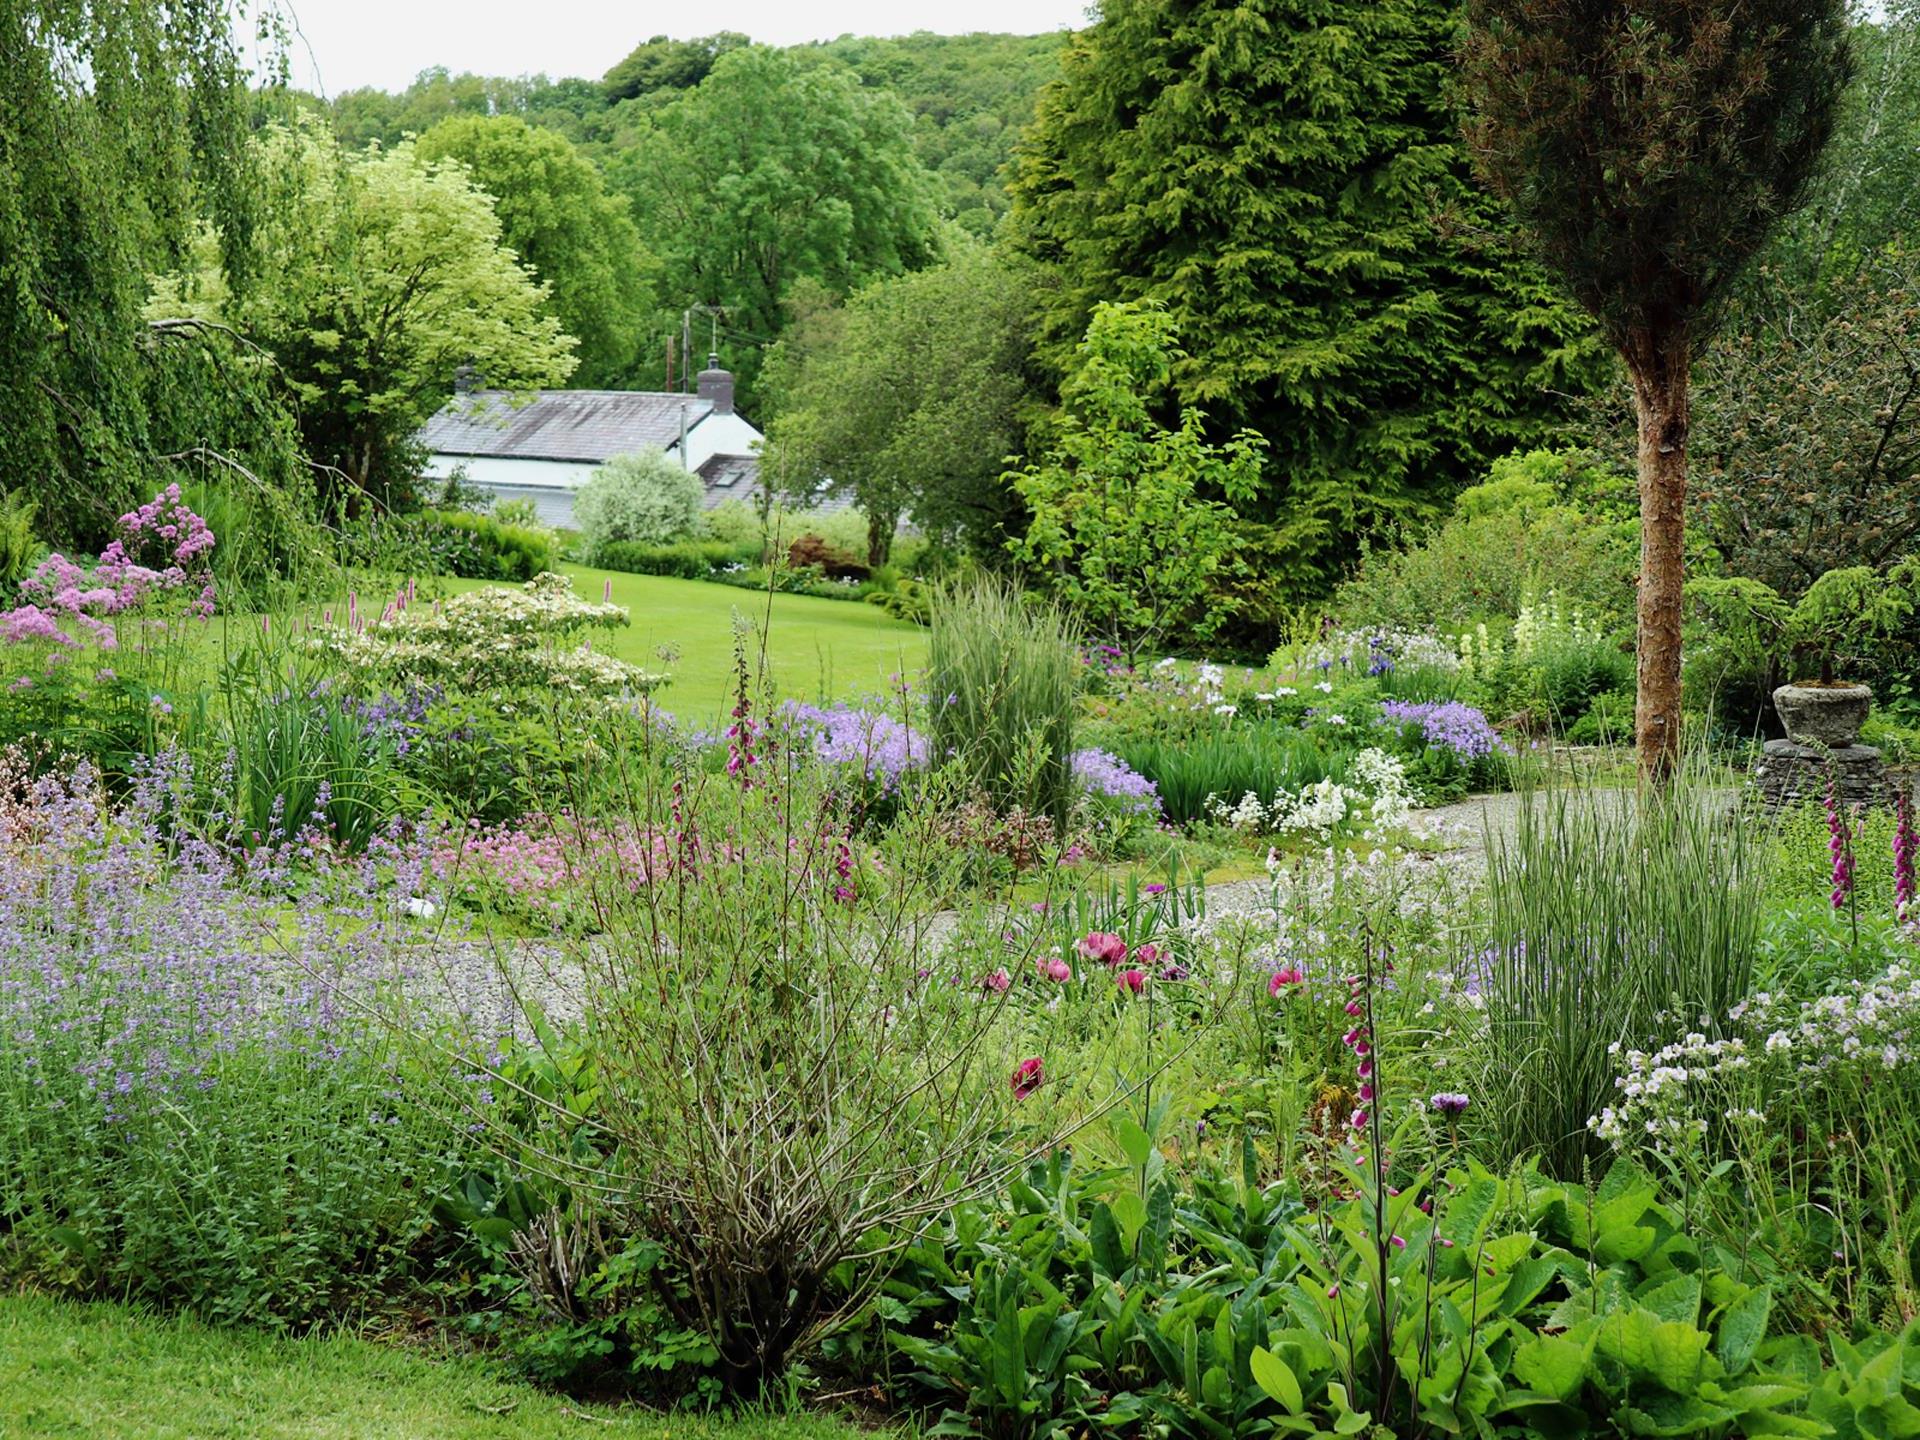 Blue Garden at Cae Hir Gardens, West Wales